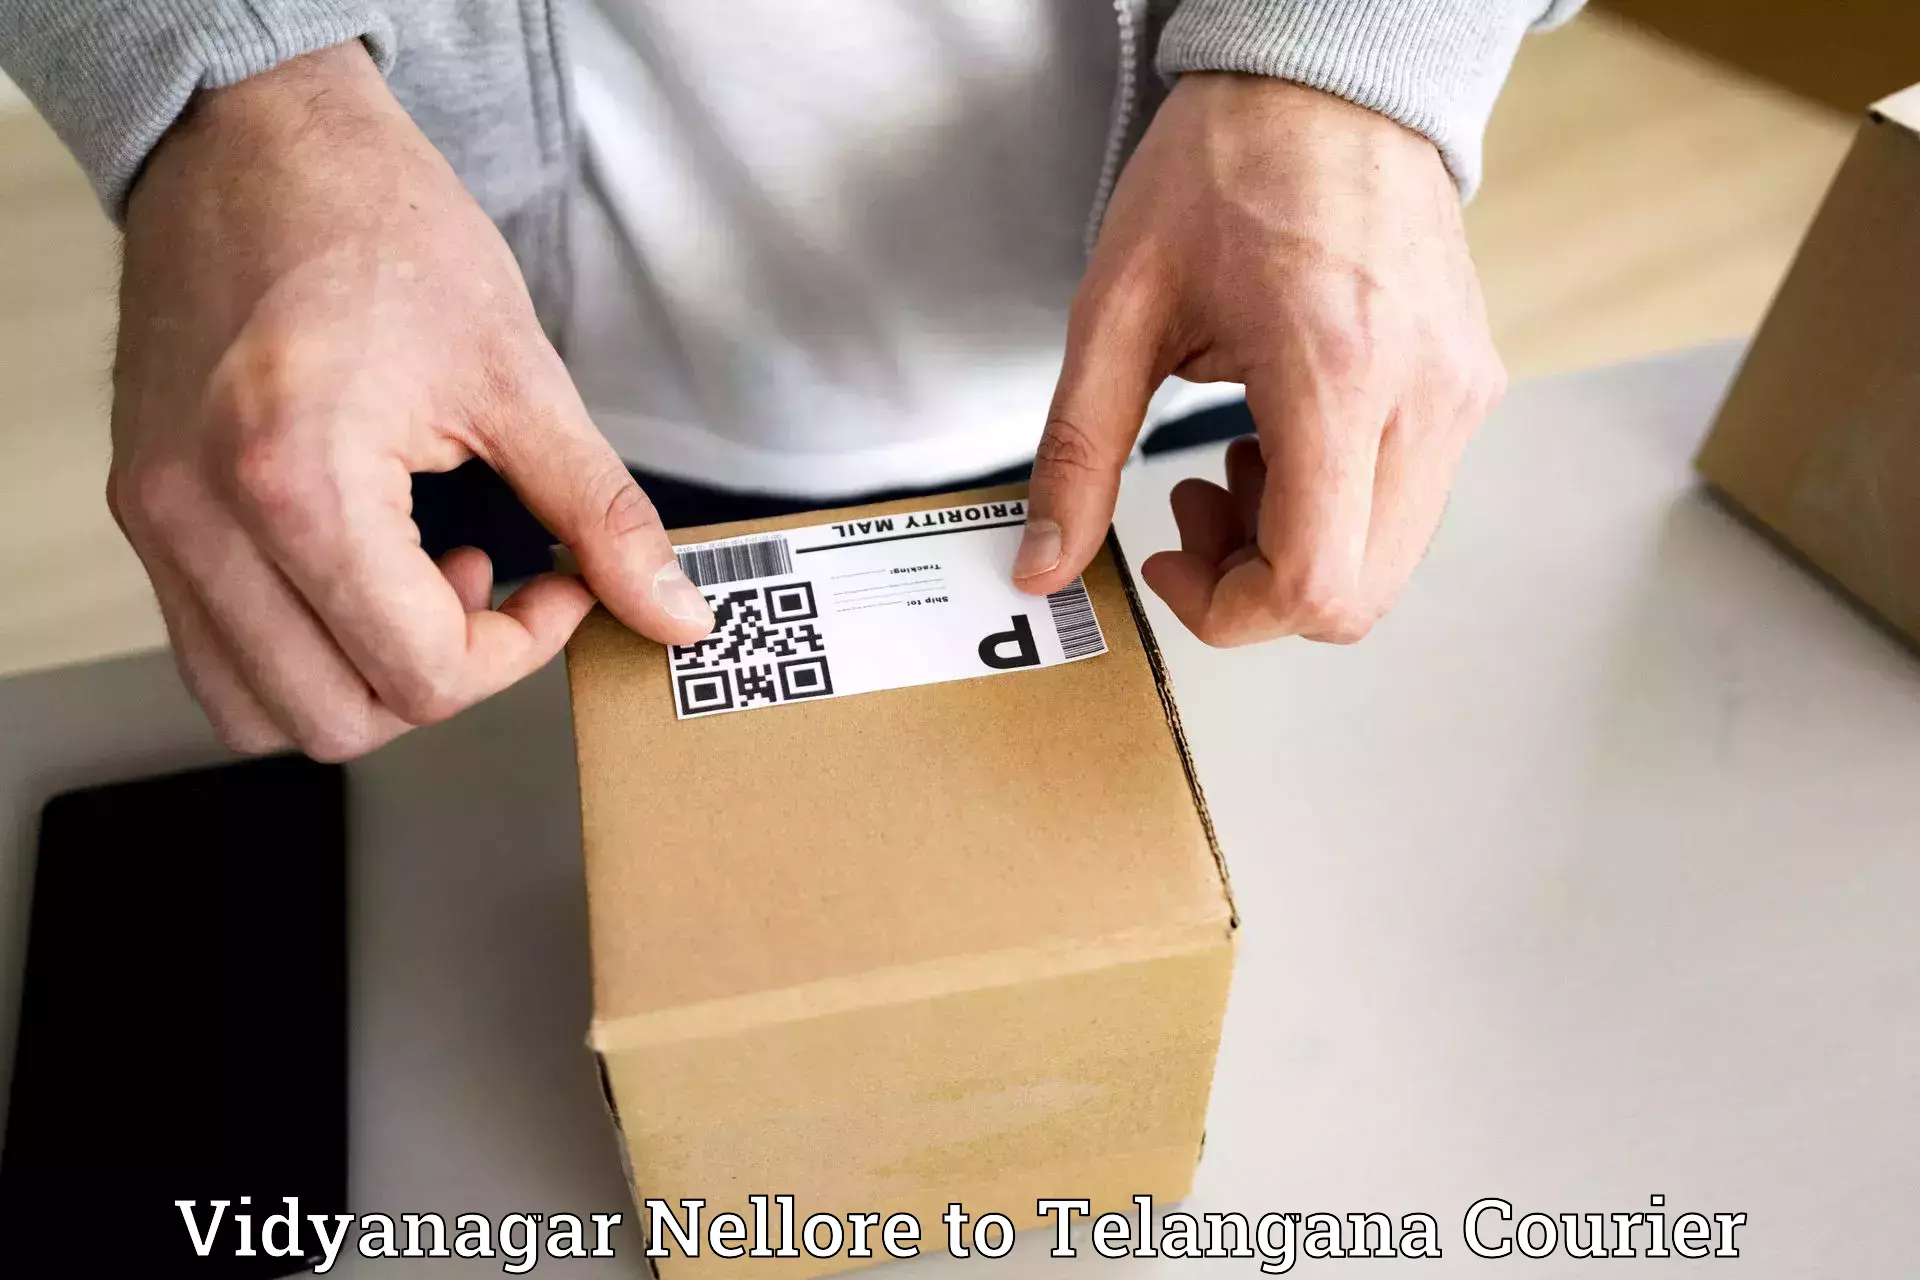 Customer-oriented courier services Vidyanagar Nellore to Nereducharla